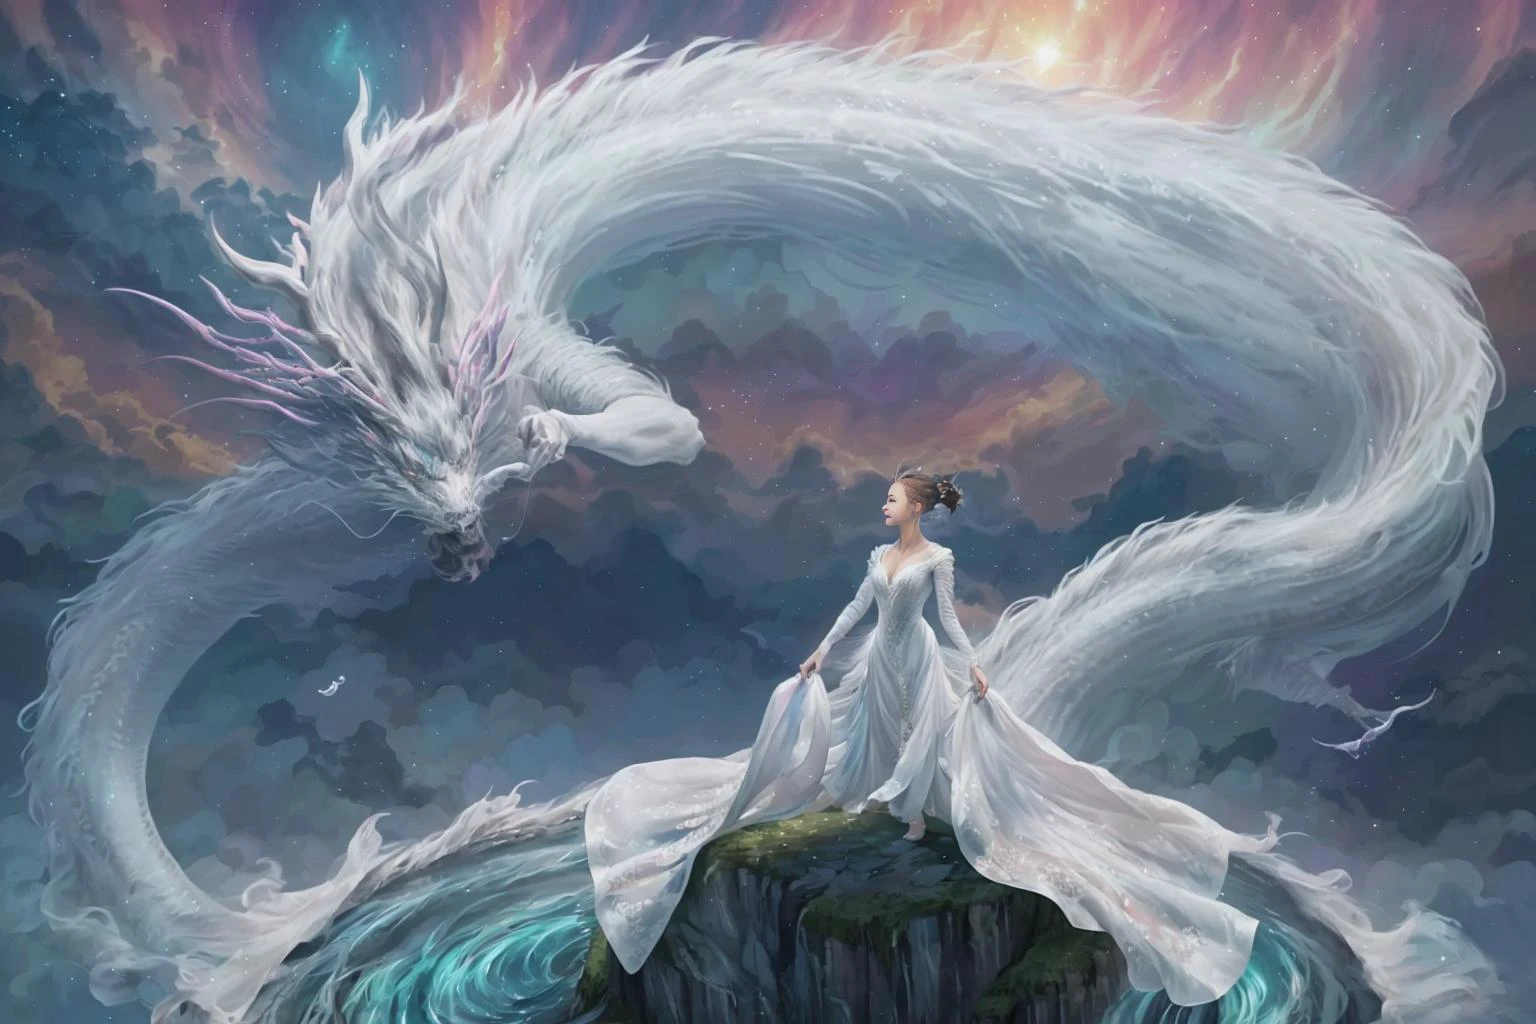 En una imagen cautivadora, Una mujer elegante vestida con un vestido chino blanco se desliza por el cielo encima de un dragón chino mítico.. Mientras atraviesan los cielos, su vestido fluido y las escamas iridiscentes del dragón crean una visión fascinante de armonía y belleza de otro mundo.. 
HDR, (photorealism, Calidad de obra maestra, mejor calidad), , pureerosface_v1,ulzzang-6500-v1.1,